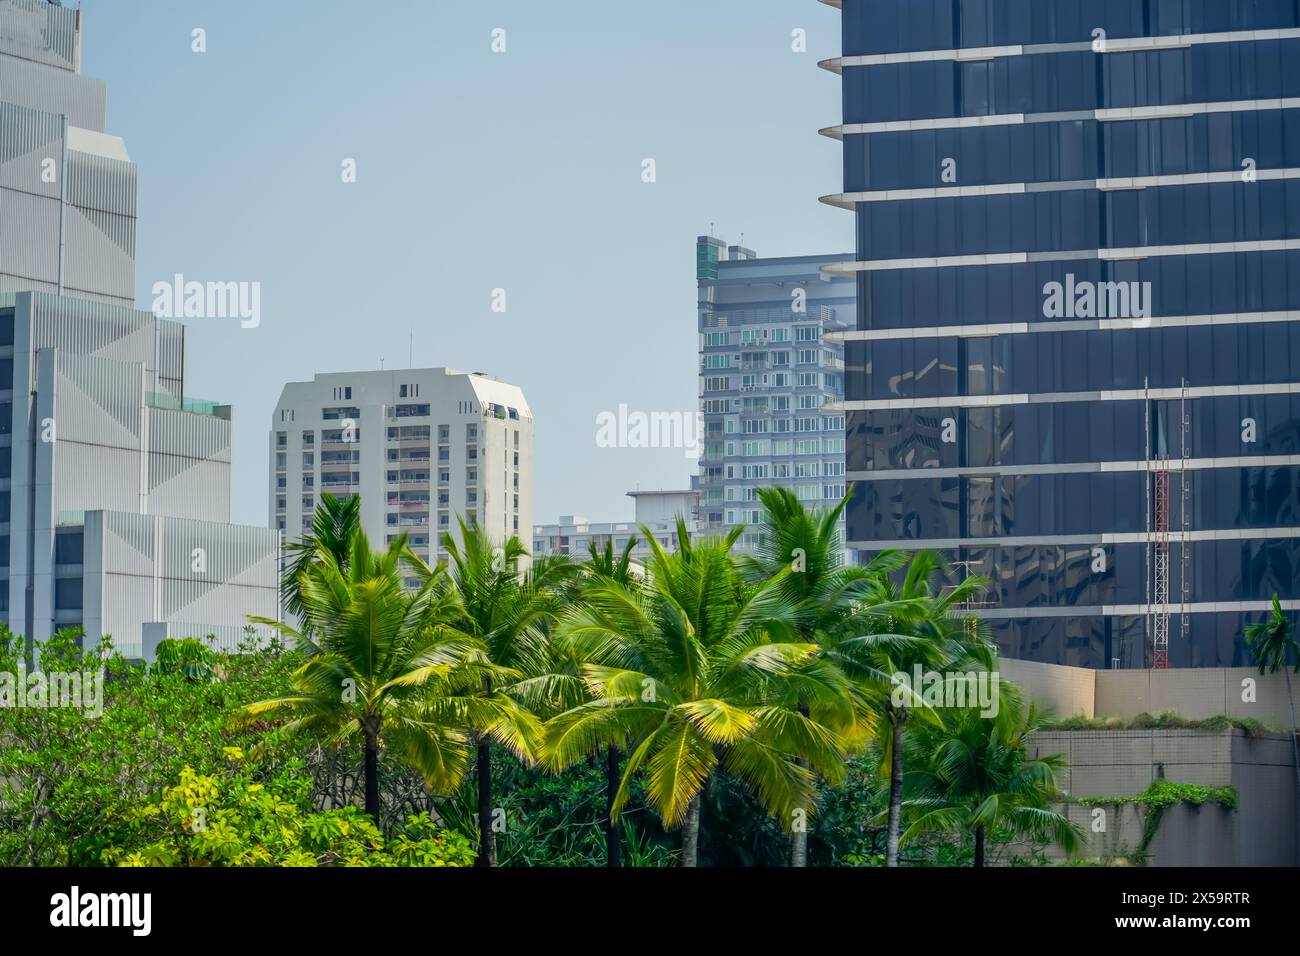 Giardini tropicali, palme e piante esotiche sui tetti dei grattacieli nella metropoli di verande e terrazze. Foto Stock